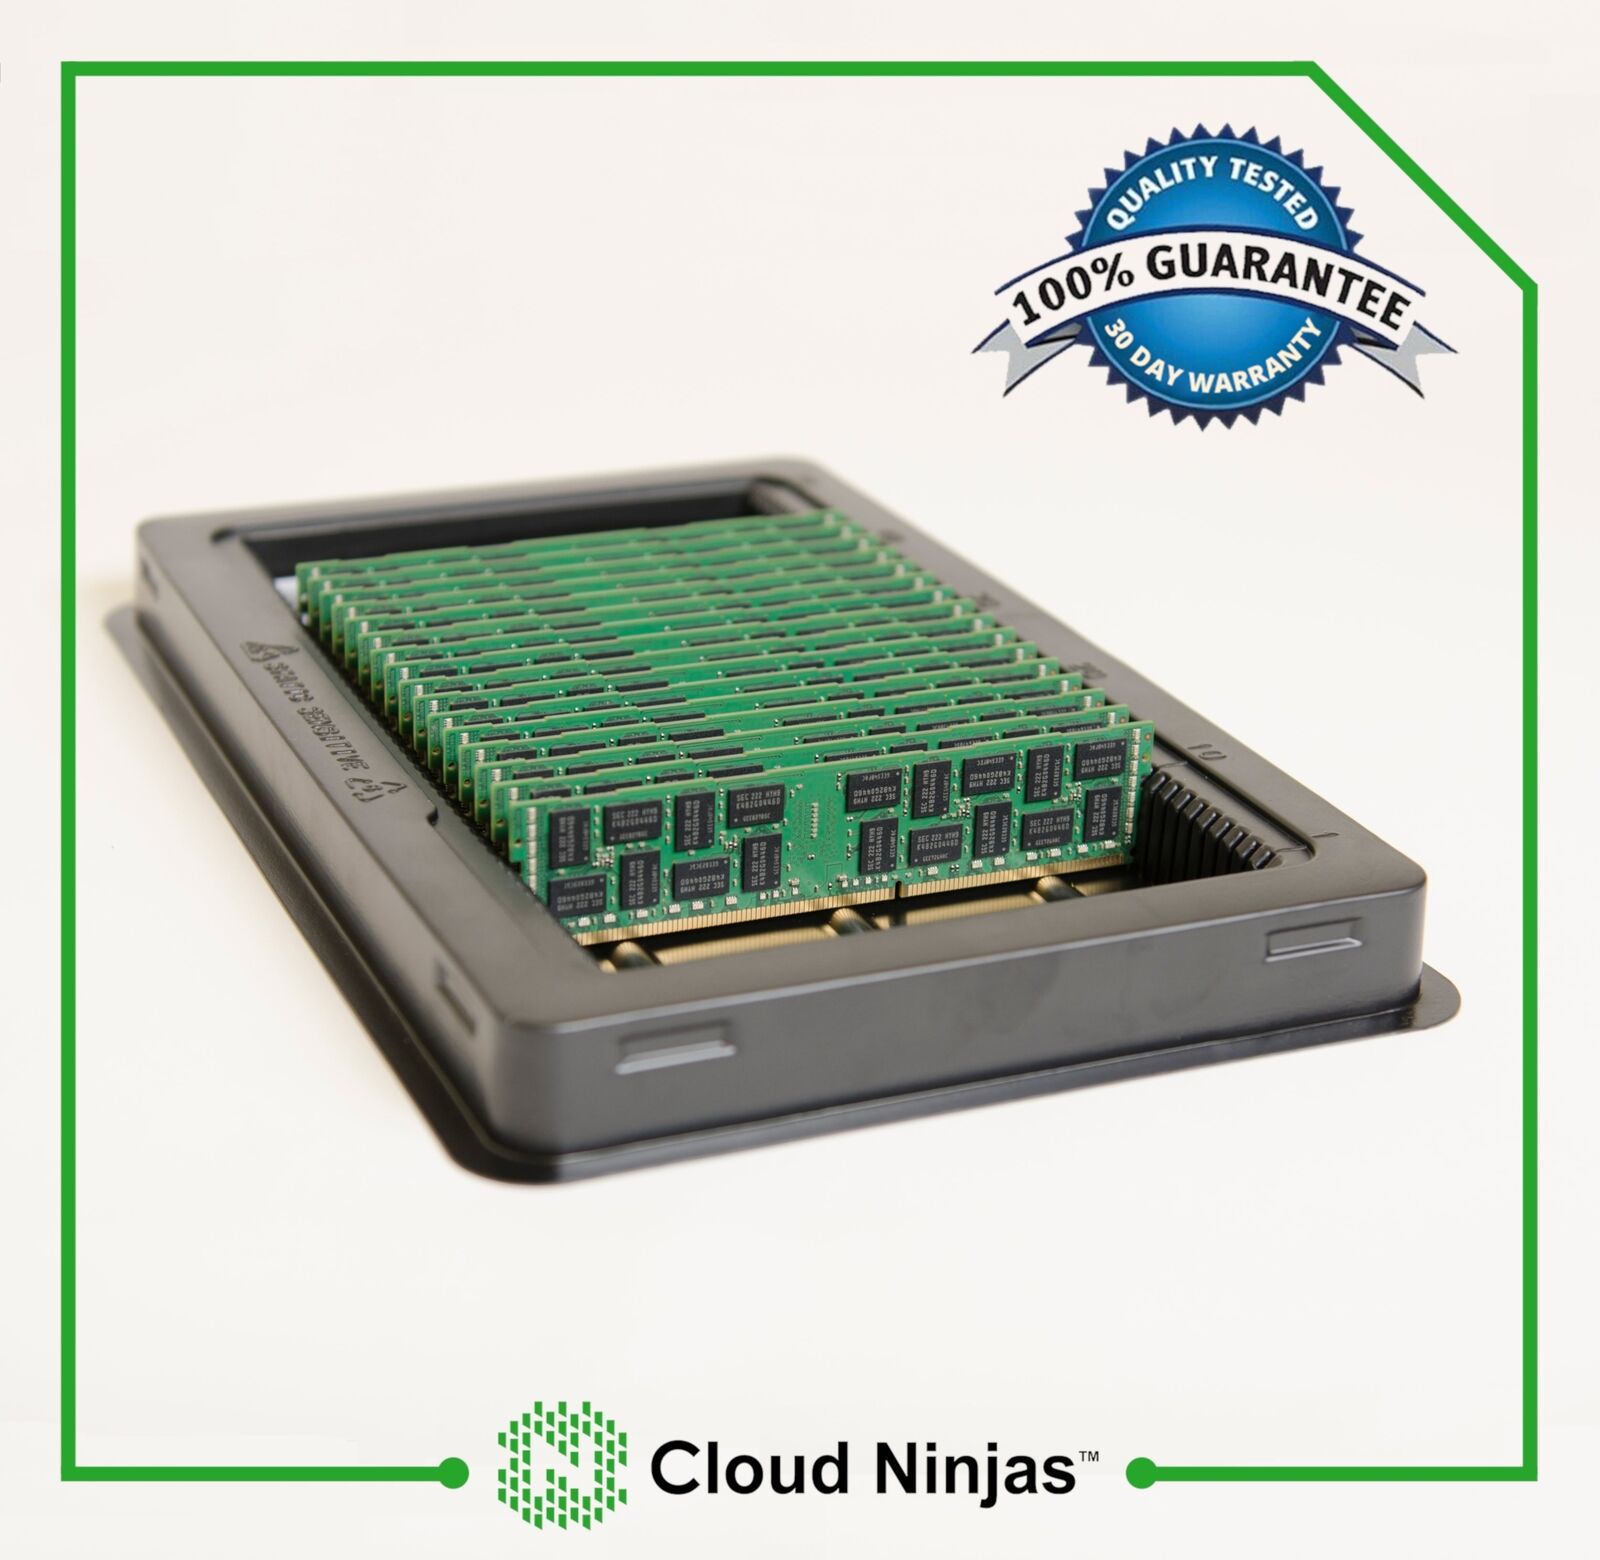 192GB (12x16GB) DDR3 PC3-8500R ECC Server Memory RAM IBM X3650 M3 Type 7945 Kit